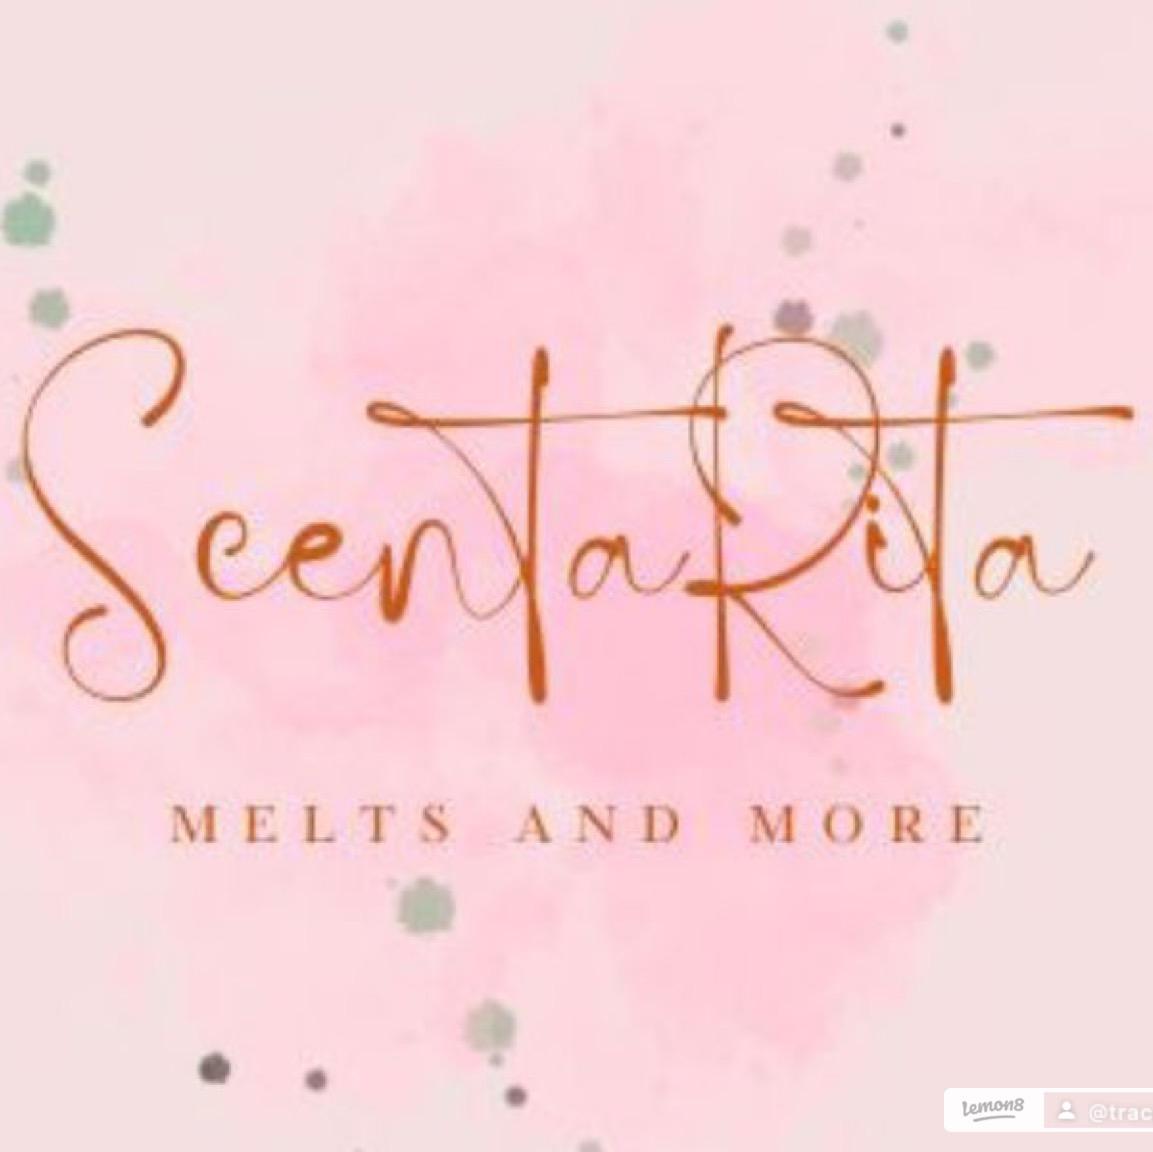 ScentaRita 's images